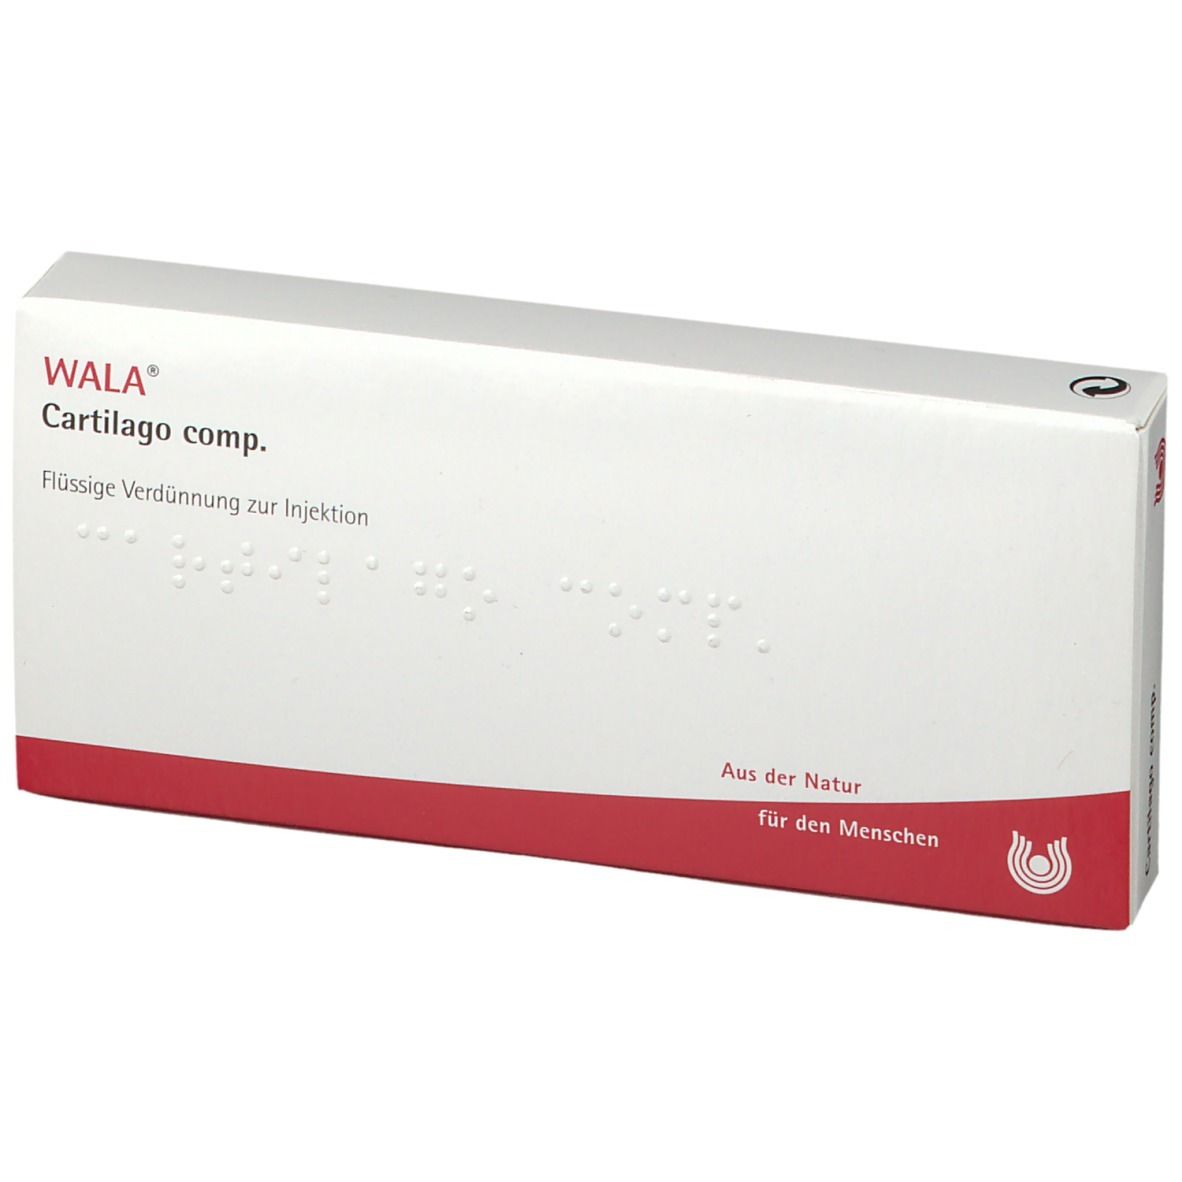 WALA® Cartilago Comp. Amp.